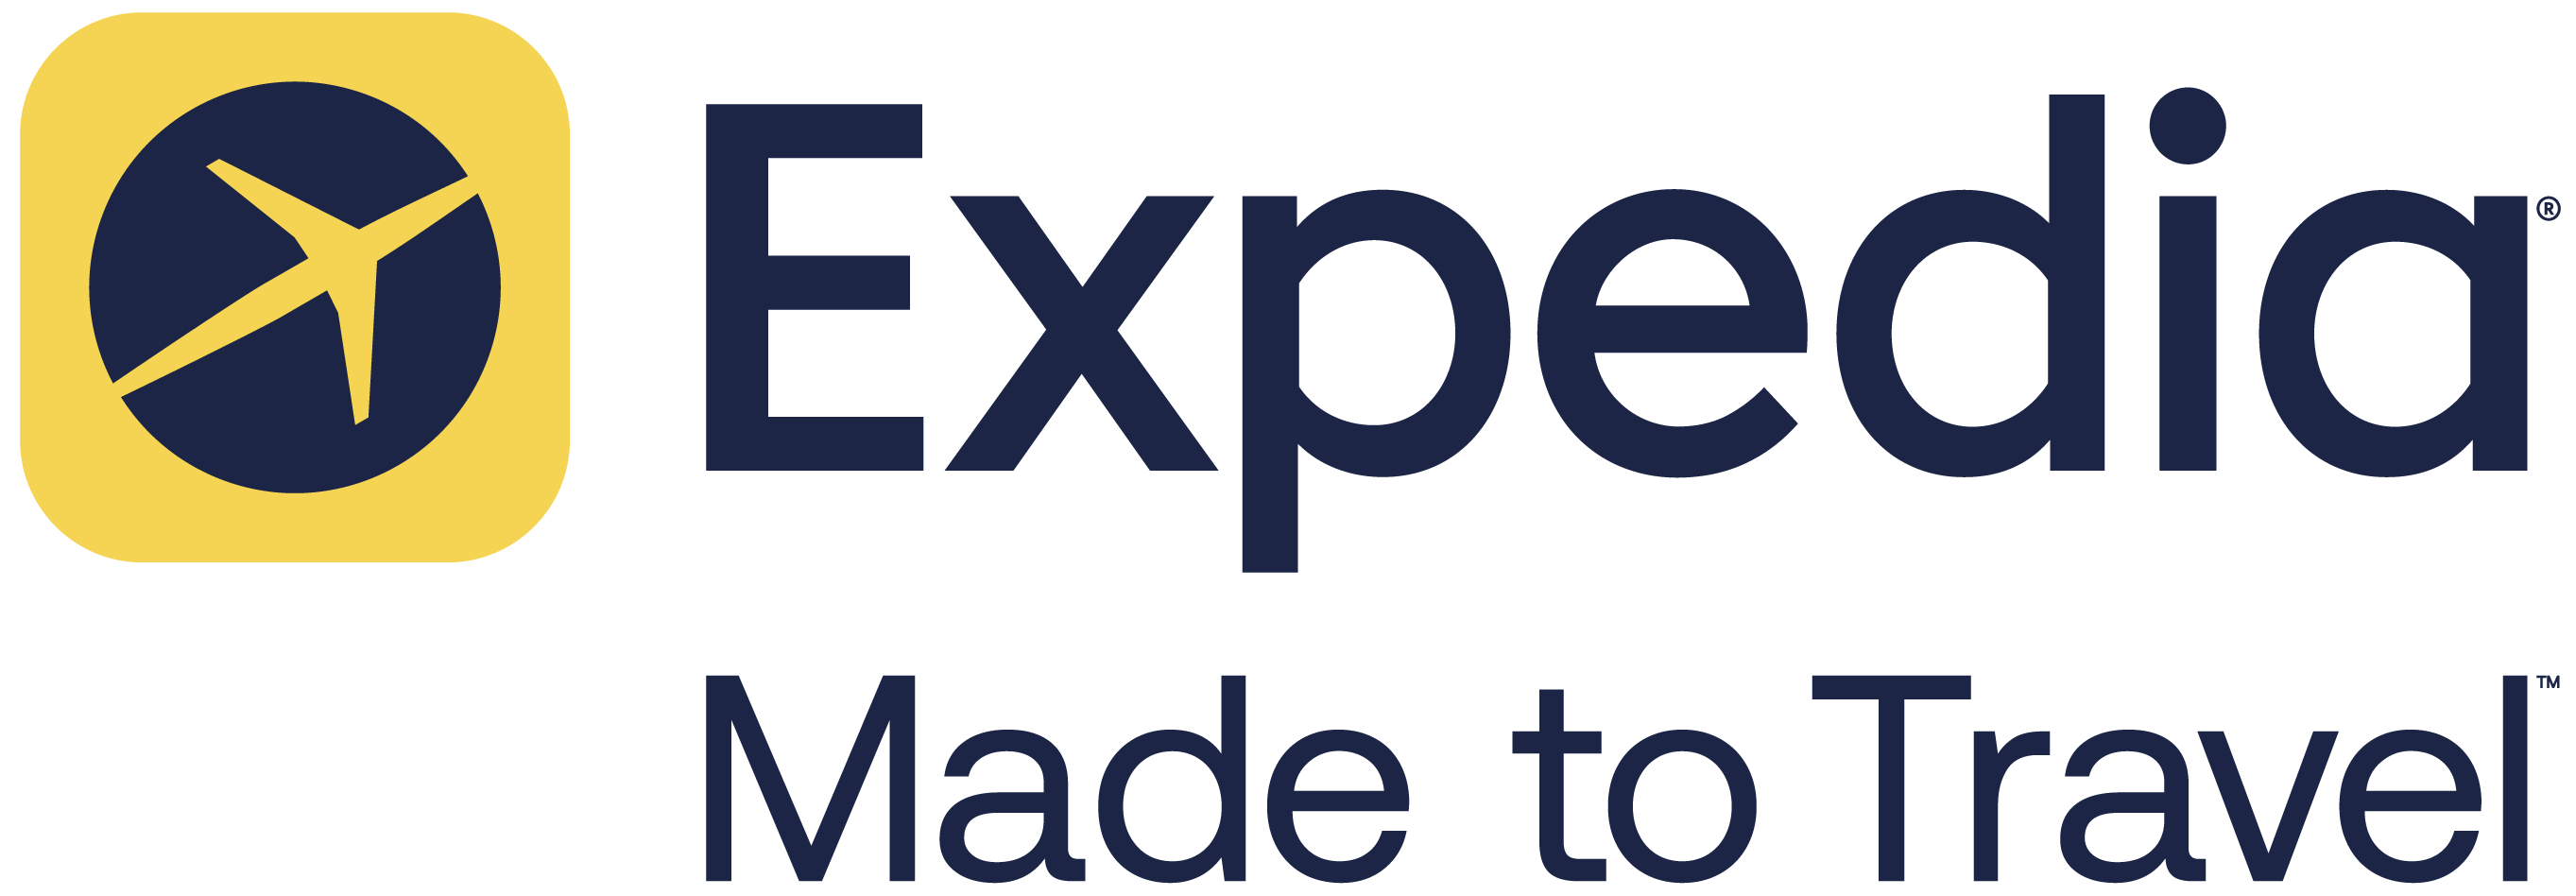 Expedia Made to Travel logo